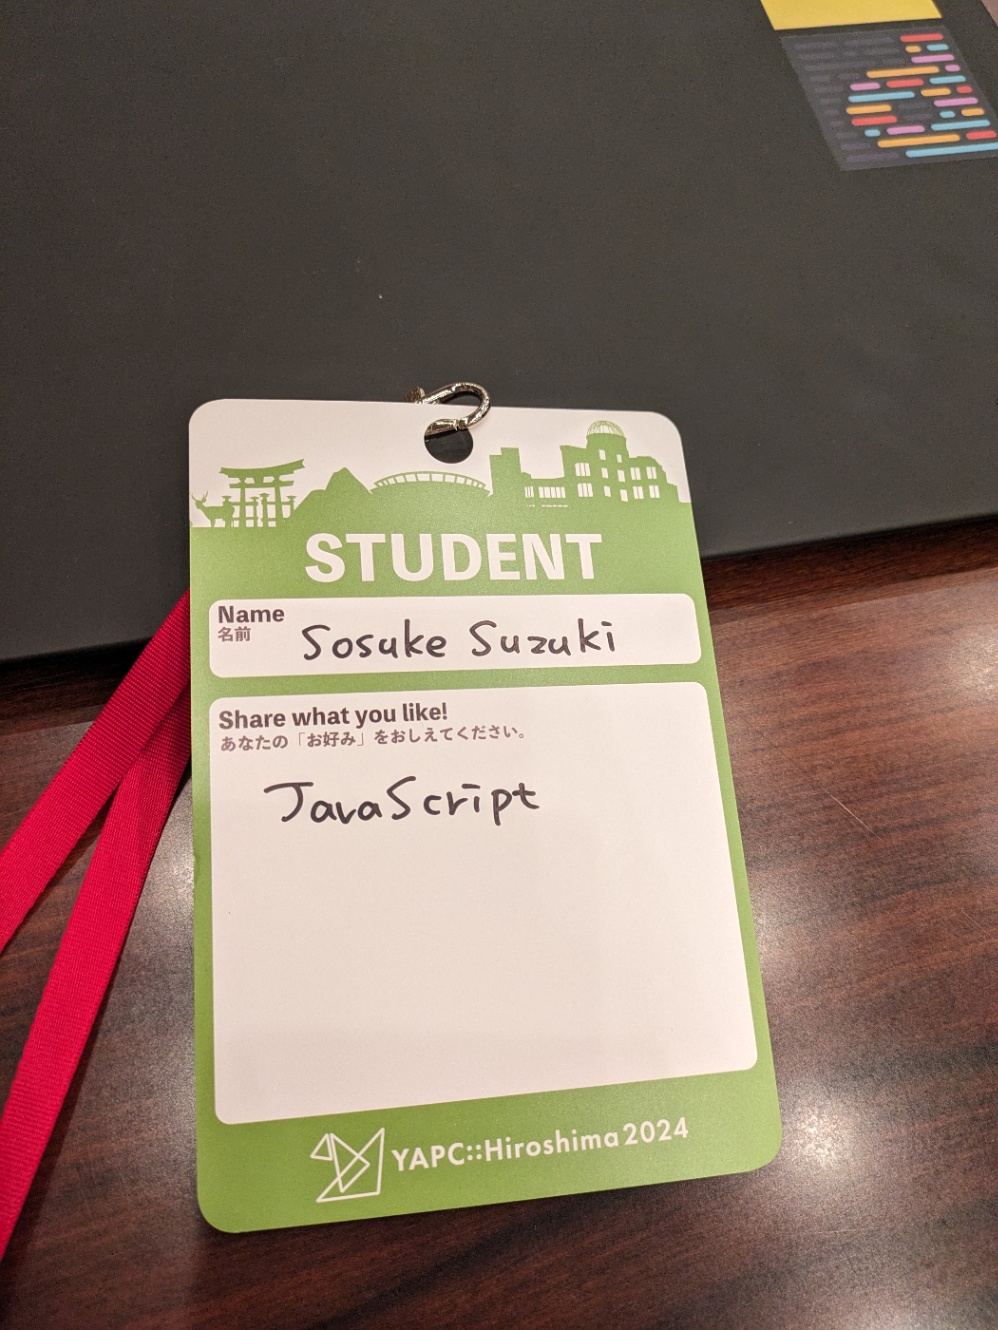 黄緑色のネームカード。Name欄にはSosuke Suzukiと書かれている。Share what you like 欄には JavaScript と書かれている。